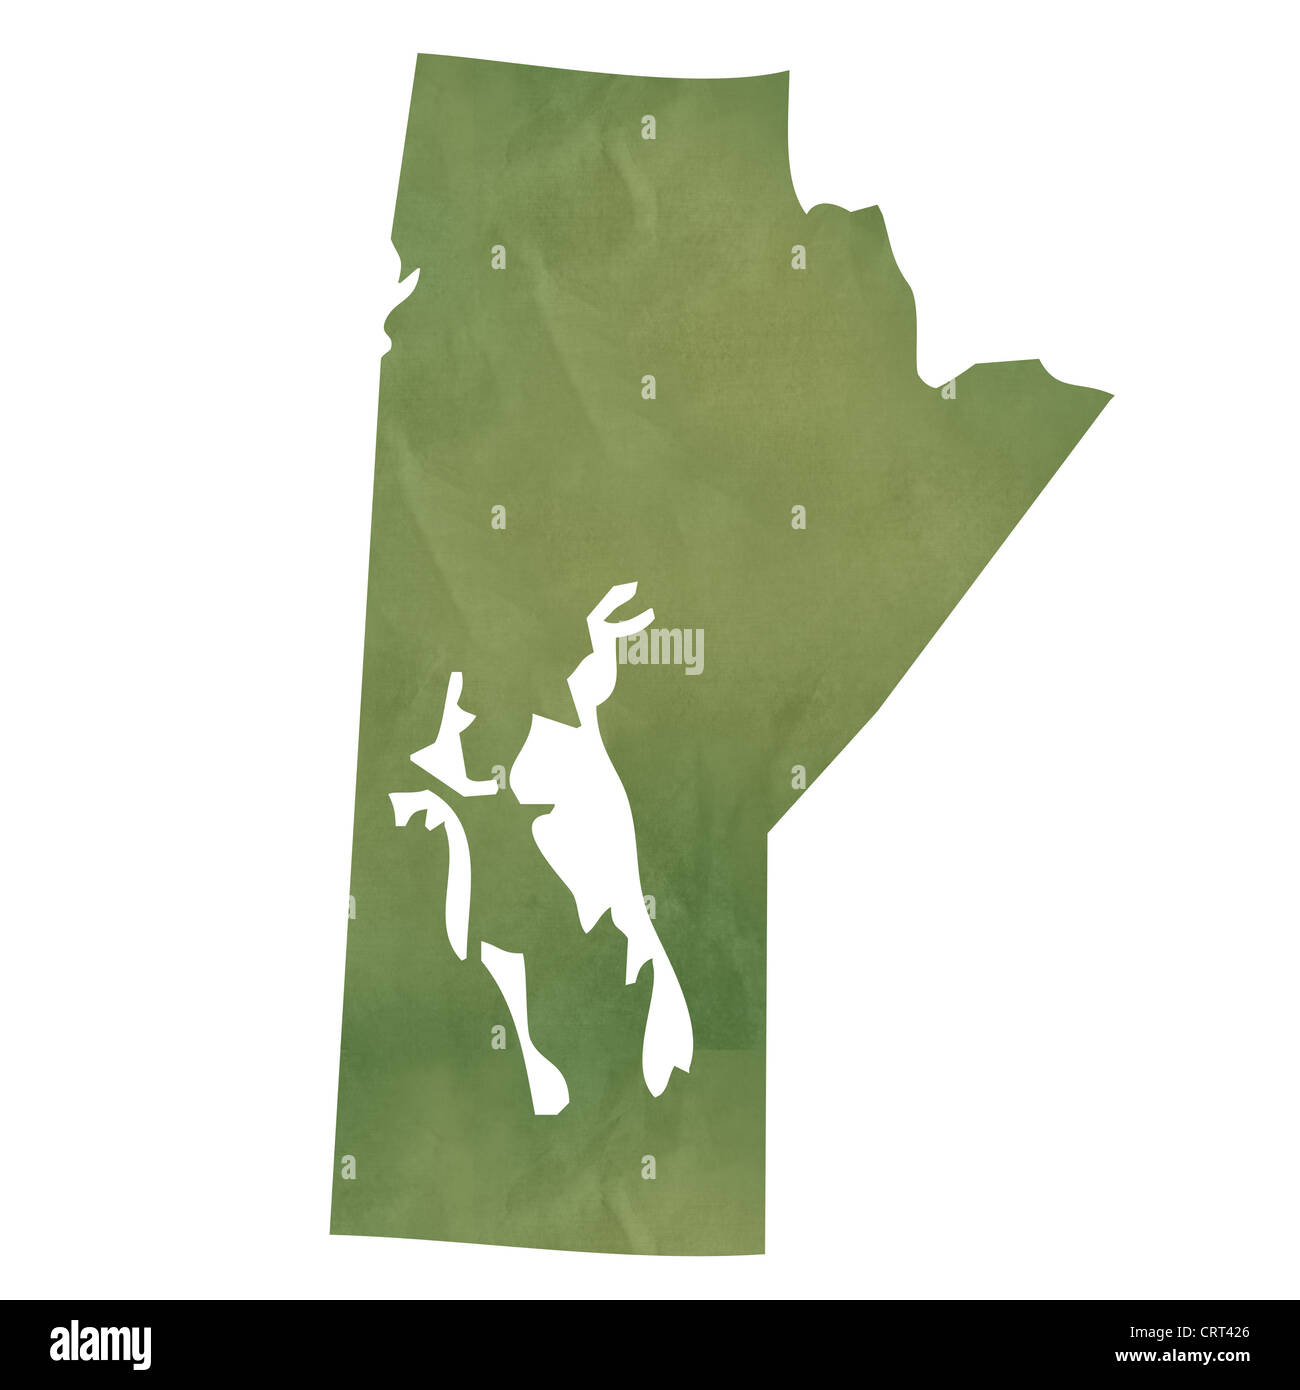 Manitoba Provinz Kanada Karte im alten grünen Papier isoliert auf weißem Hintergrund. Stockfoto